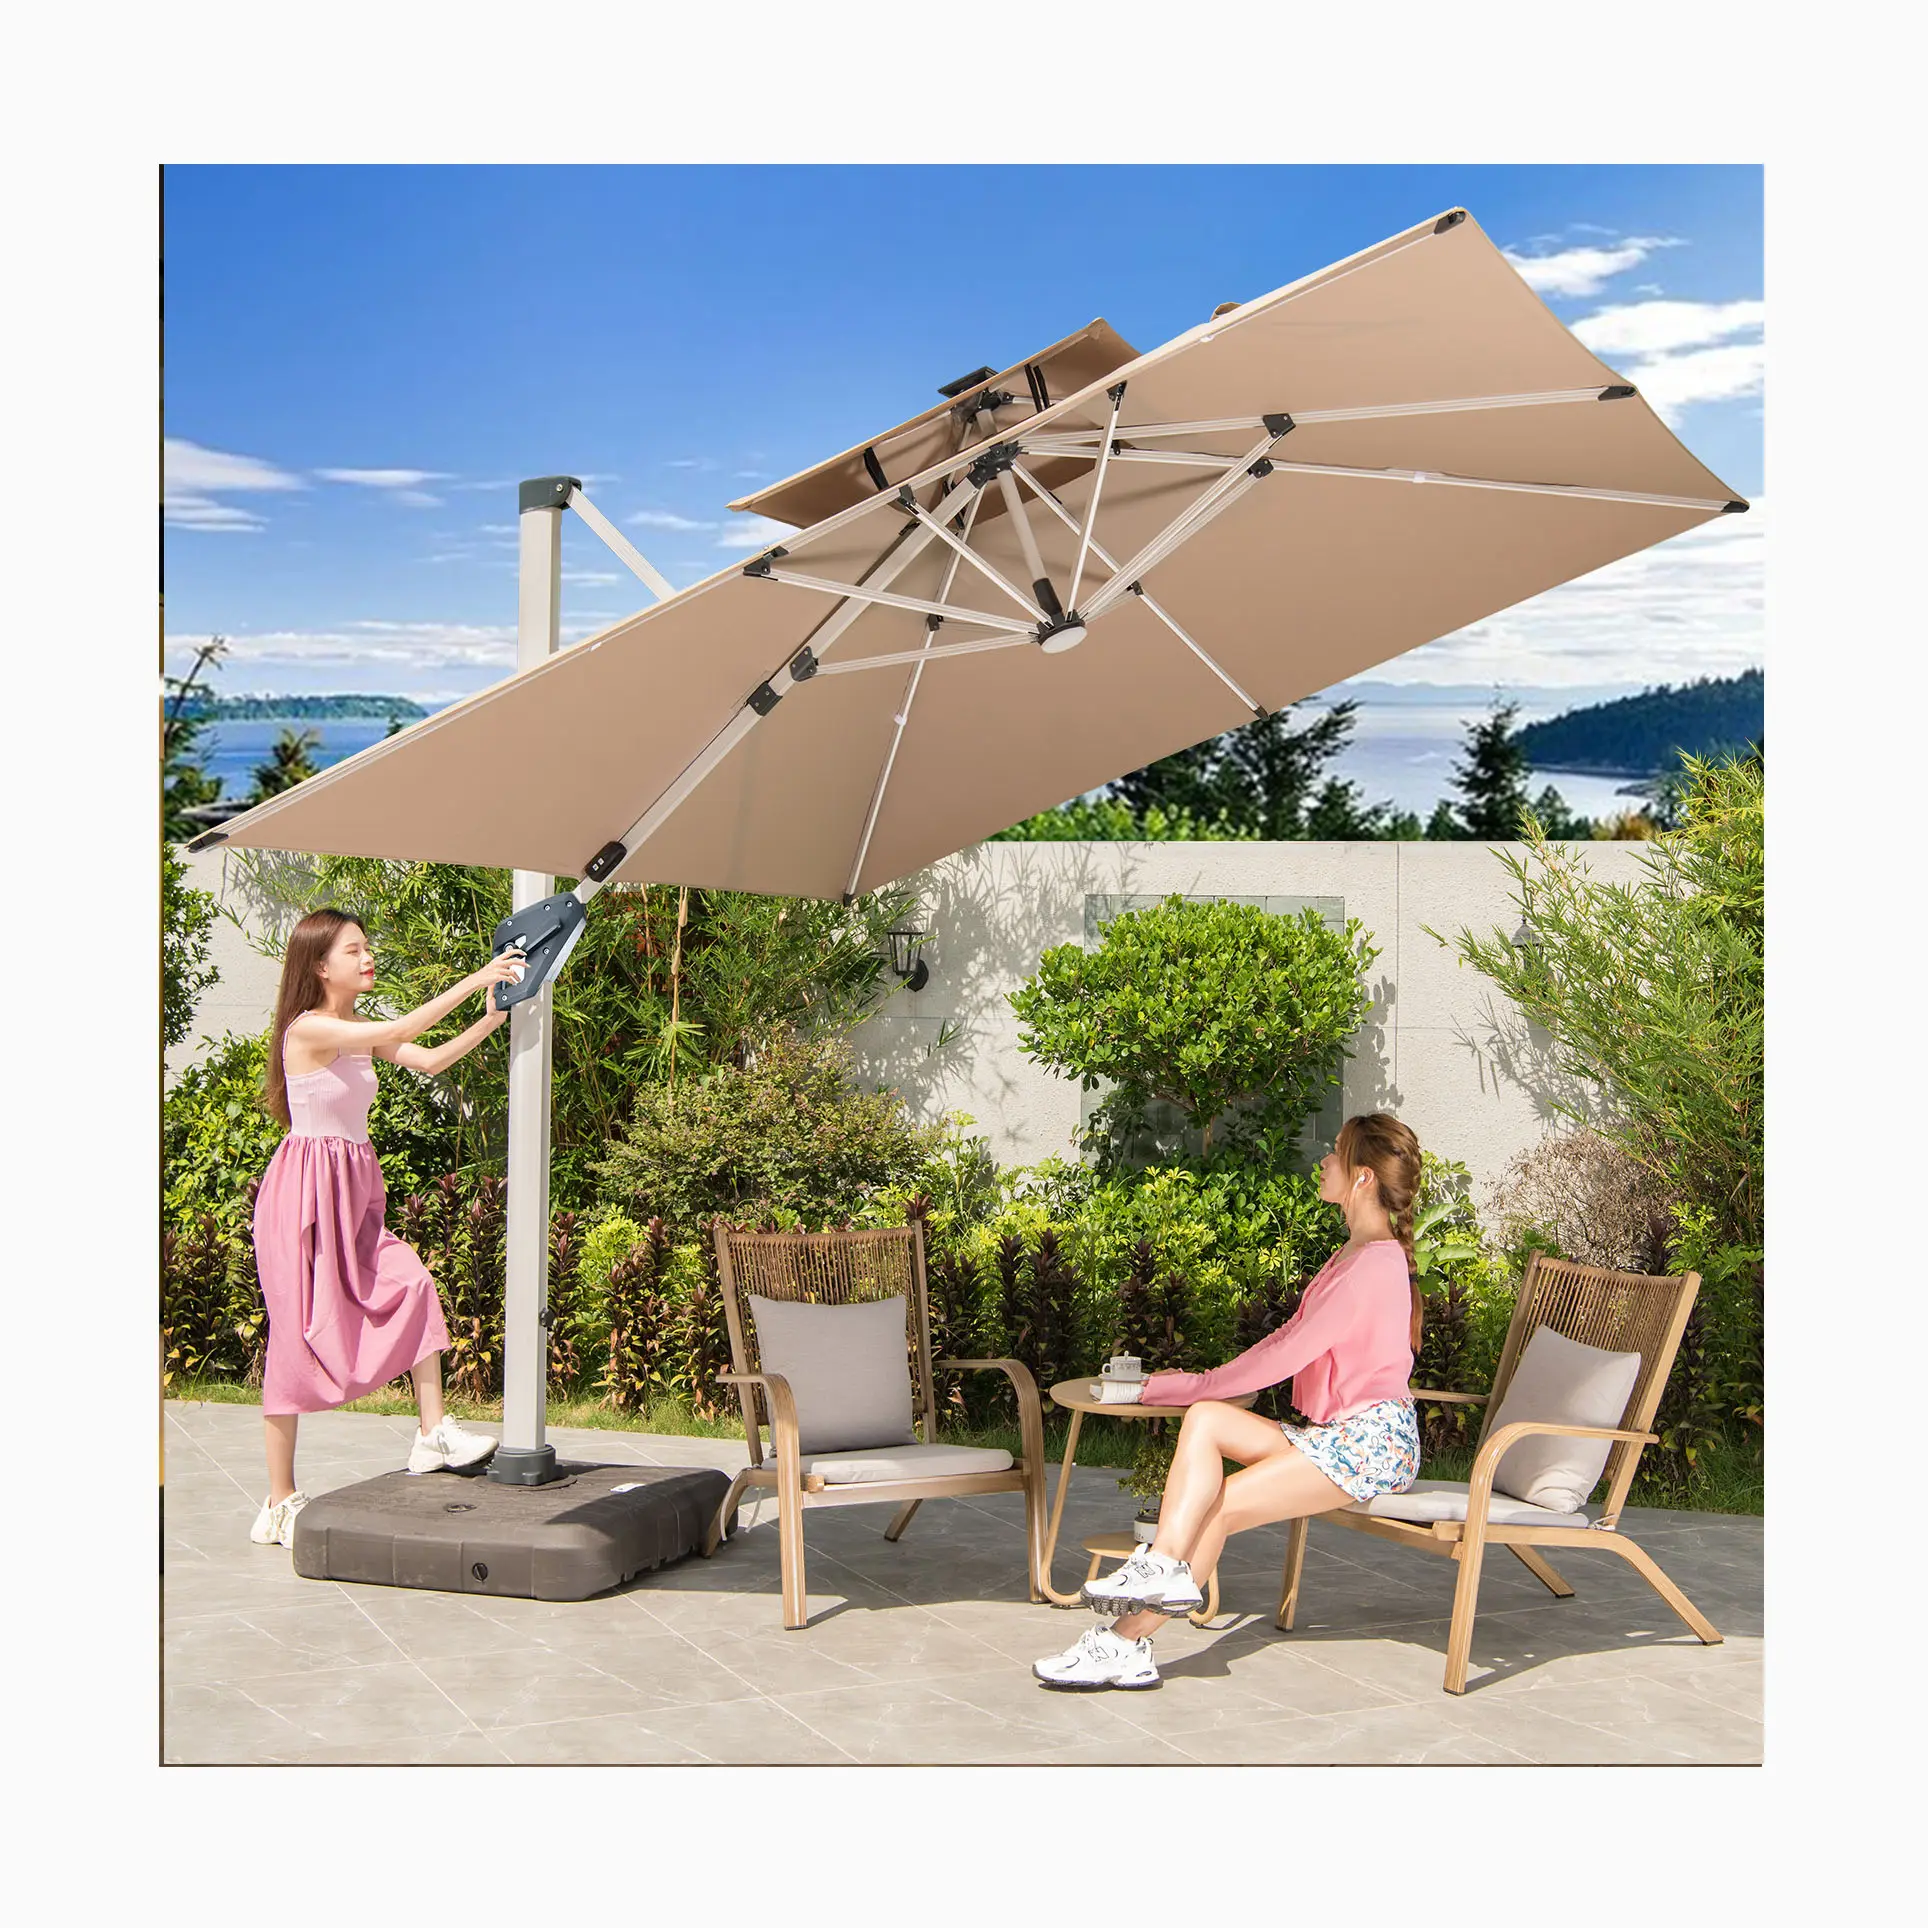 [MOJIA] 베니스 램프 스트라이프 가든 레스토랑 야외 파라솔 공간 알루미늄 막대 저렴한 A-mazon 최고 판매 야외 우산